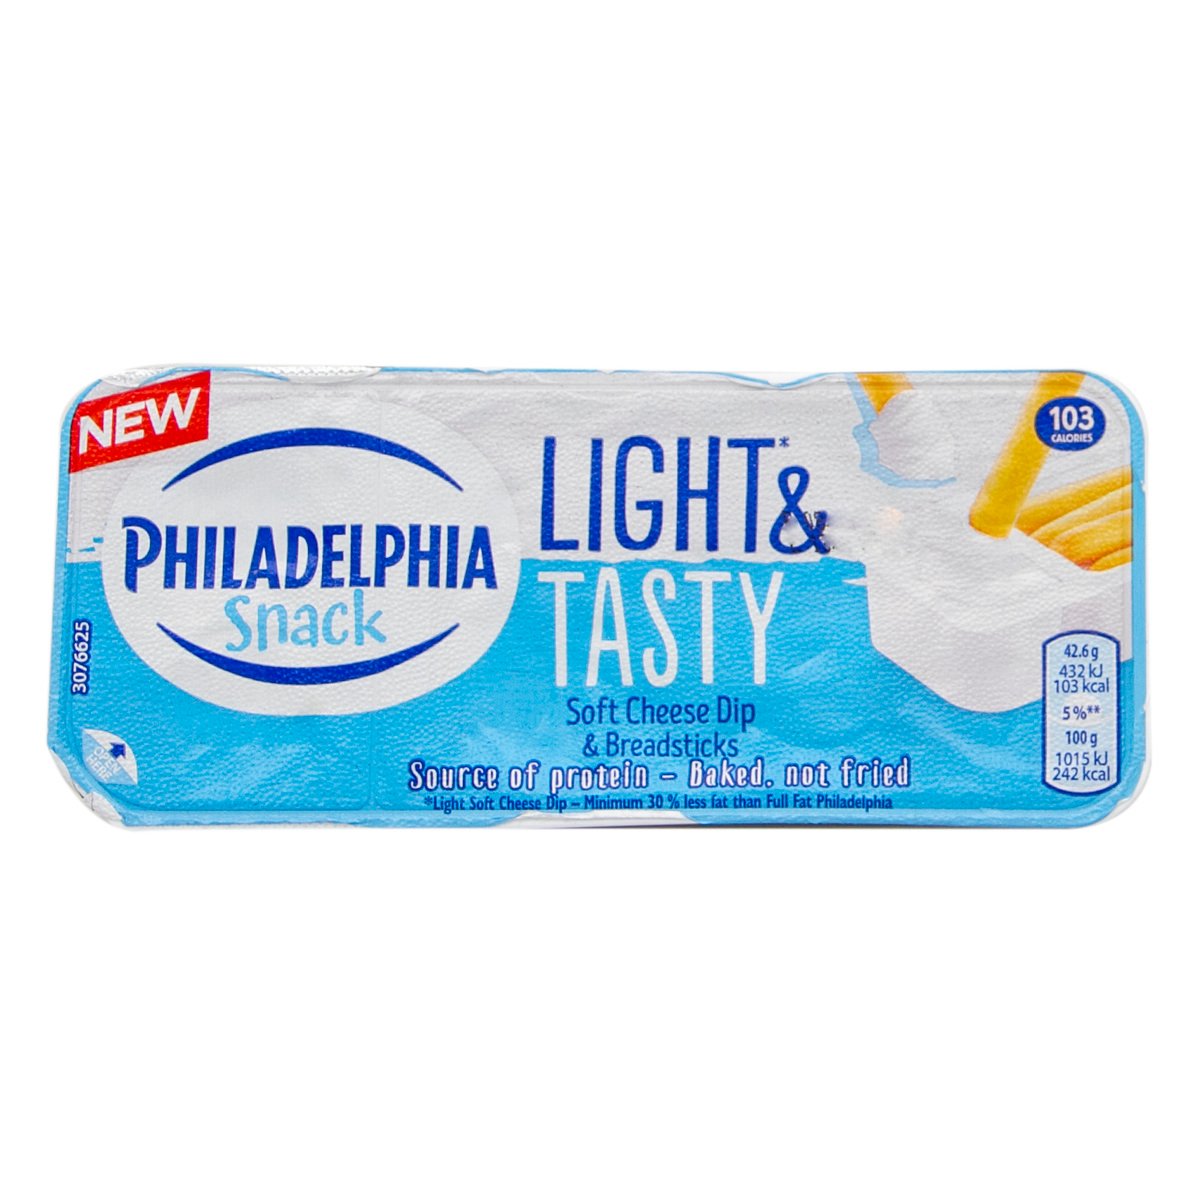 Philadelphia Snack Light & Tasty 42.6 g